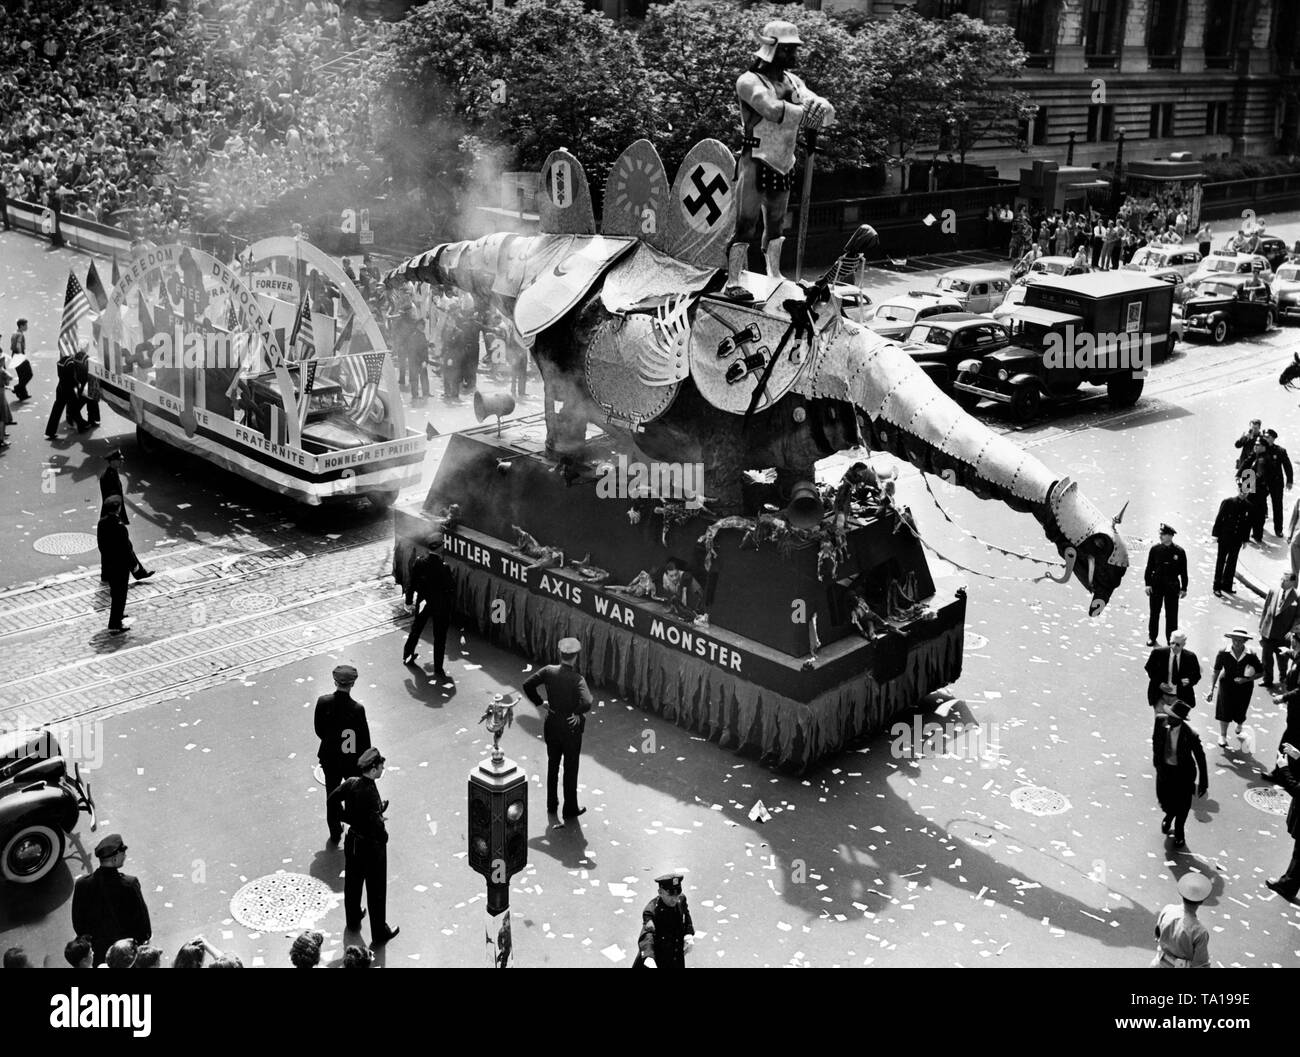 Eine Prozession in New York führt ein Auto, an dem Hitler sitzt als menschenfressende Monster mit den Worten "Hitler die Achse Krieg Monster'. Hinter, ein Auto, das war für das freie Frankreich zu stehen. Auf dem Auto die Inschriften "Liberté, Egalité, Fraternité, Honneur et Patrie" und "Freiheit, Demokratie, freien Frankreich Forever'. Neben das Hakenkreuz, das Symbol von Japan (die Sonne) und die Fasces für das faschistische Italien stehen. Stockfoto